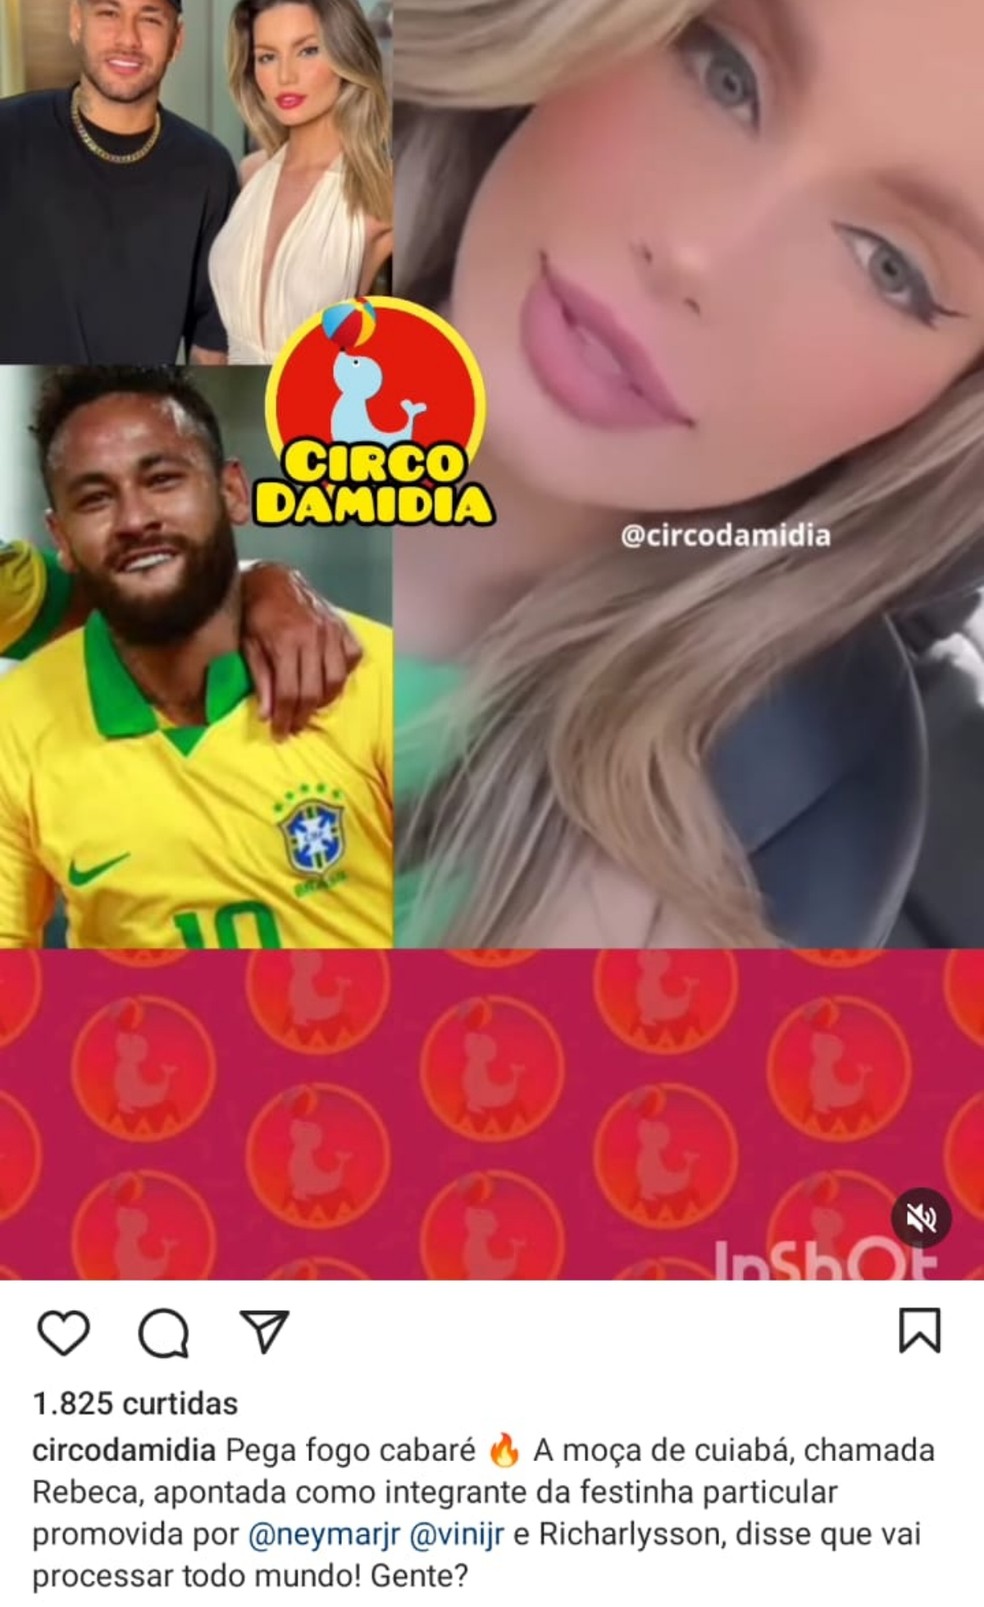 Ex-affair de Neymar esquece craque e engata namoro com outro - Fotos - R7  Futebol